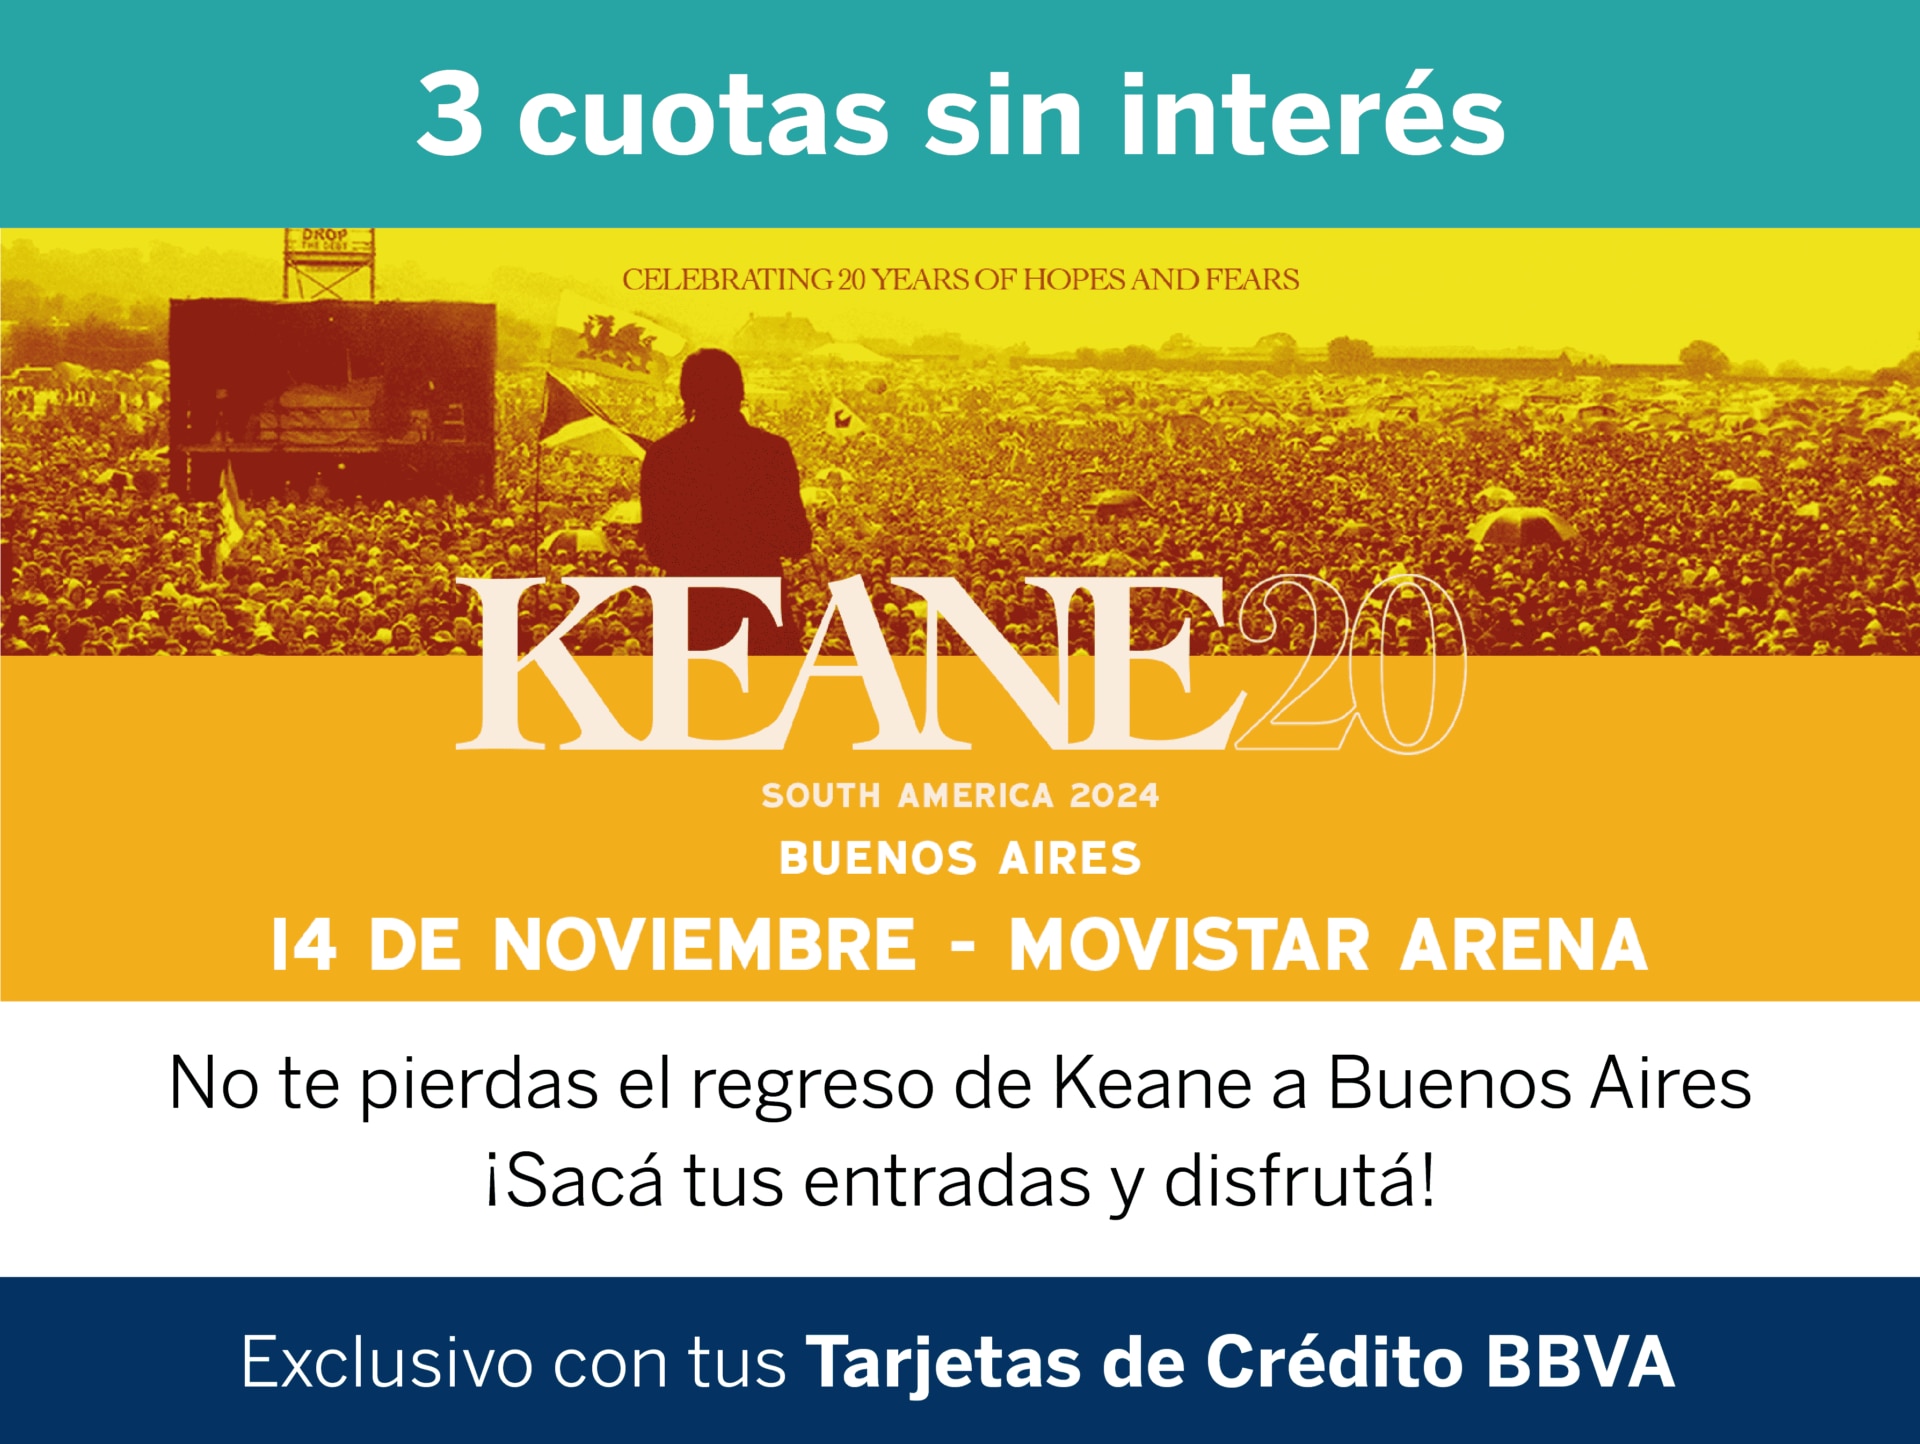 keane-volta-a-argentina:-como-comprar-ingressos-com-pre-venda-exclusiva-do-bbva